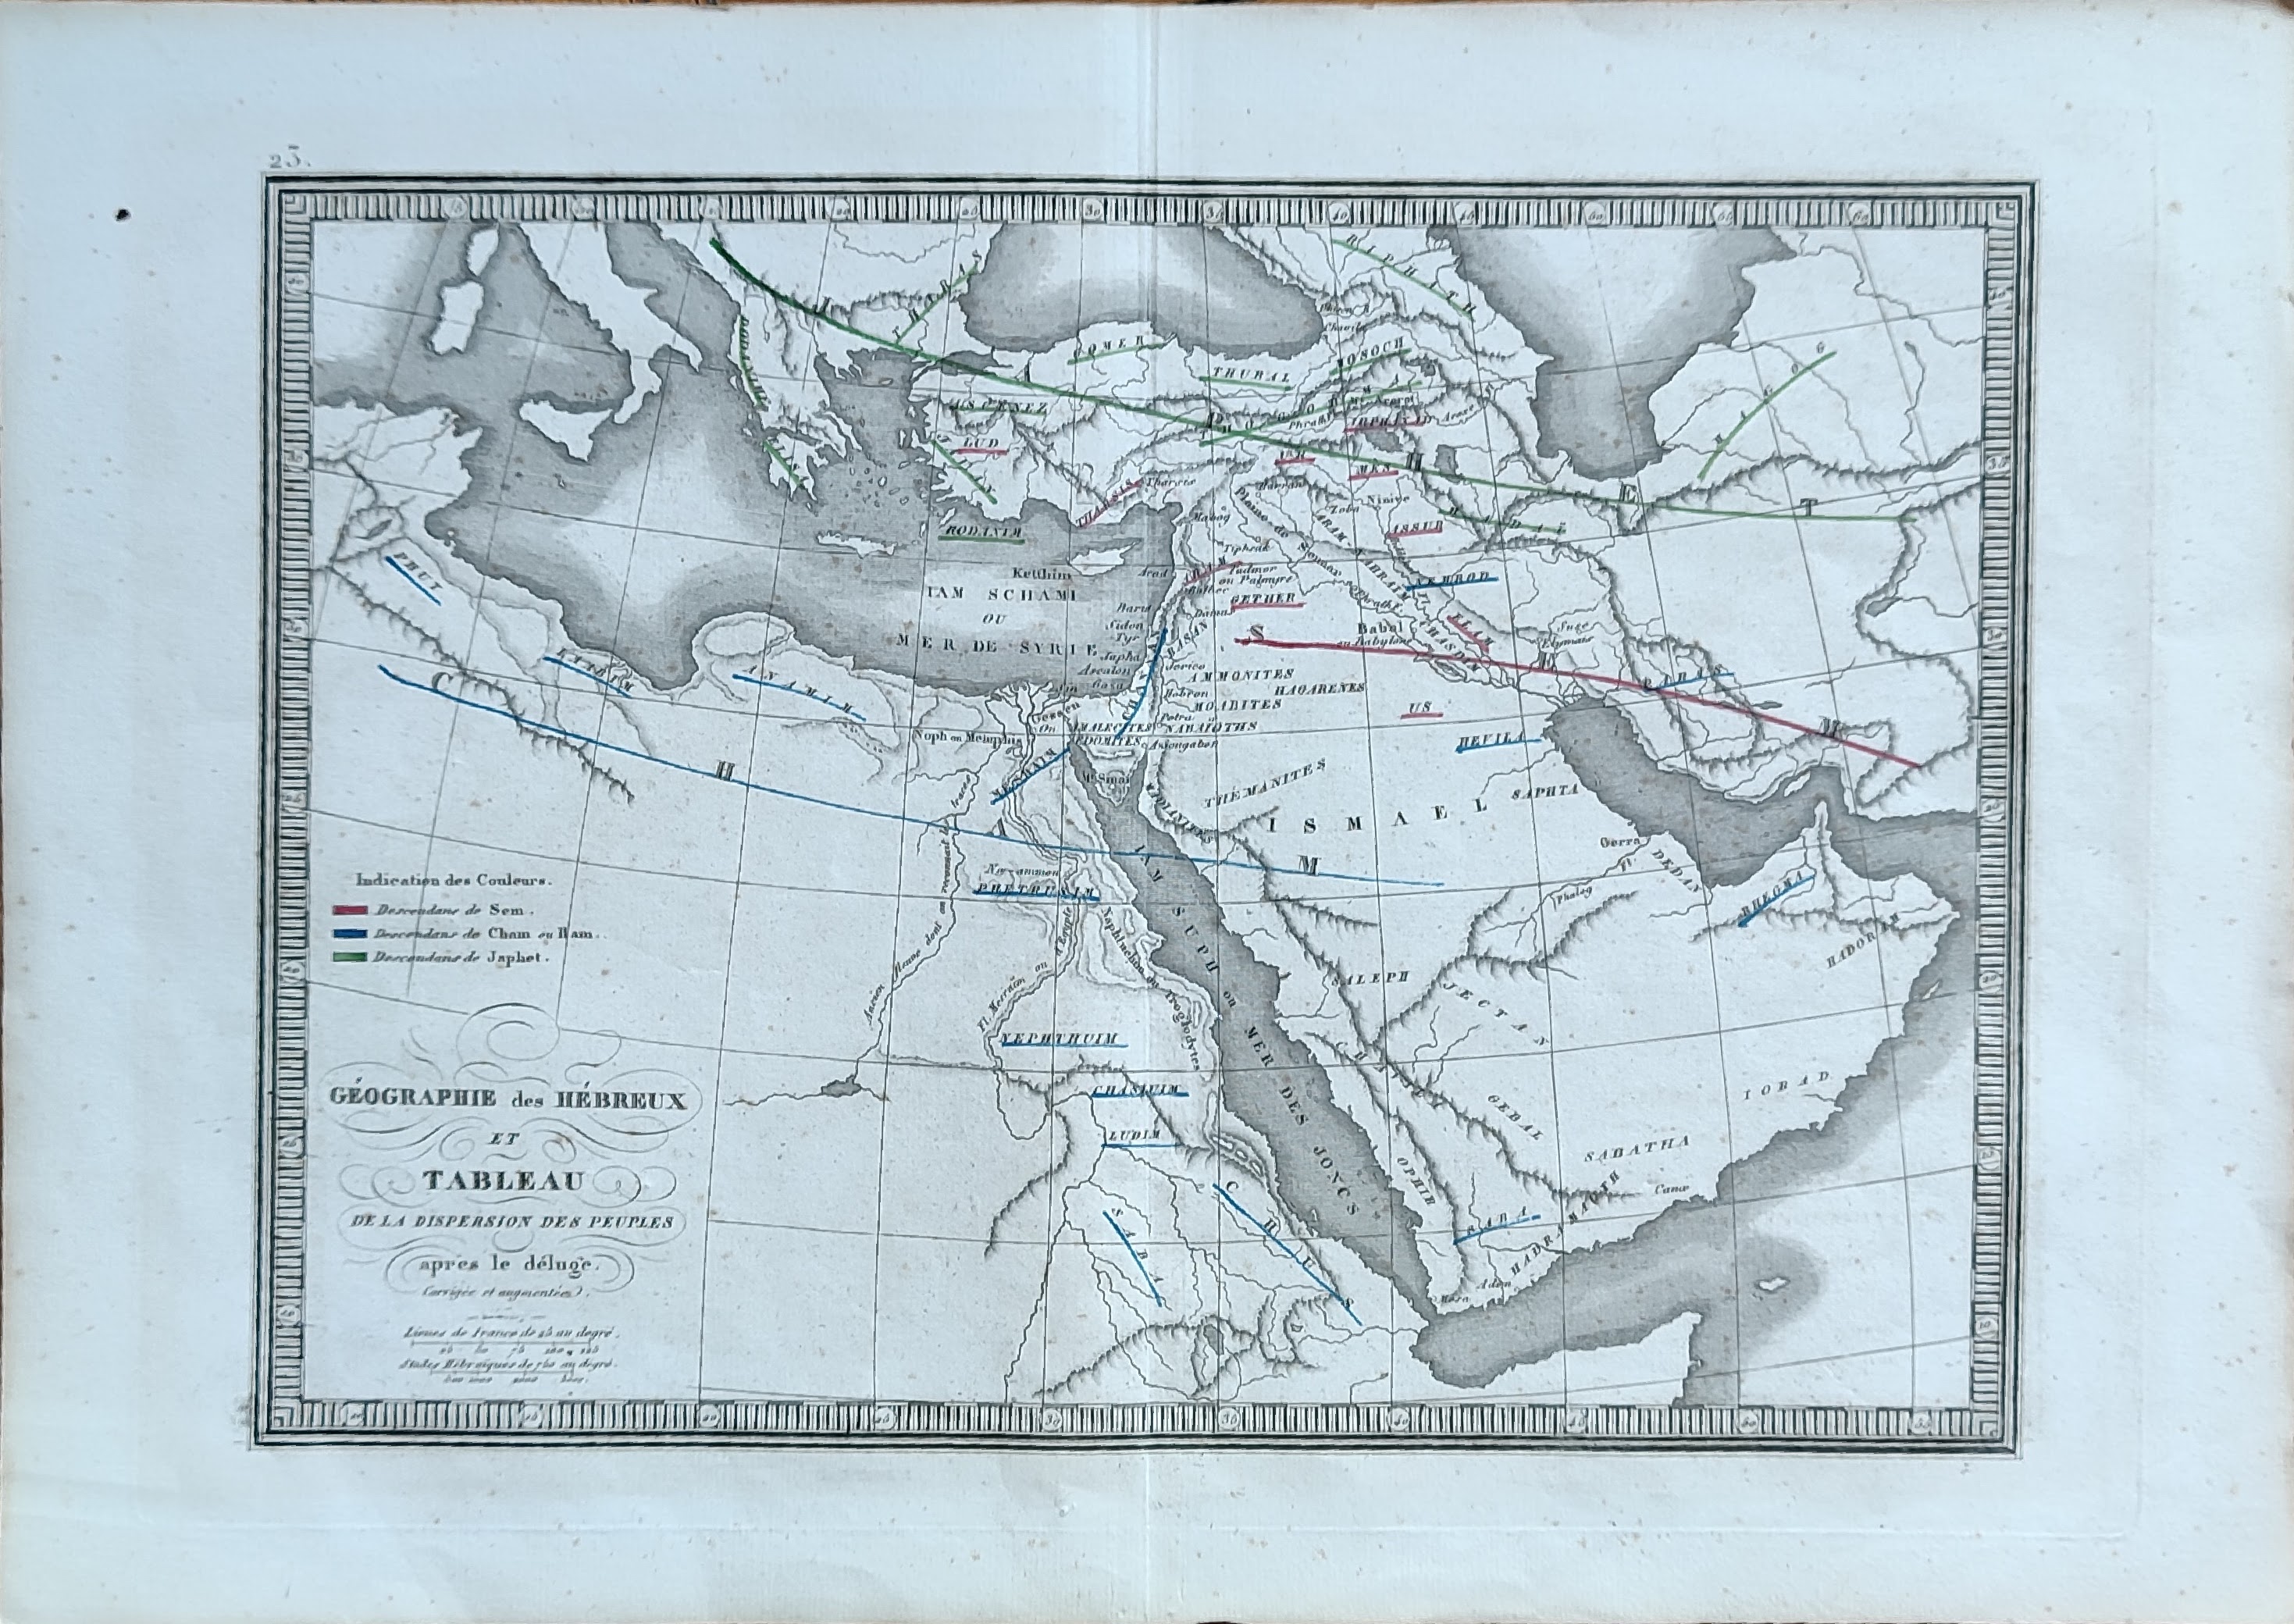 Geographie des Hebreux